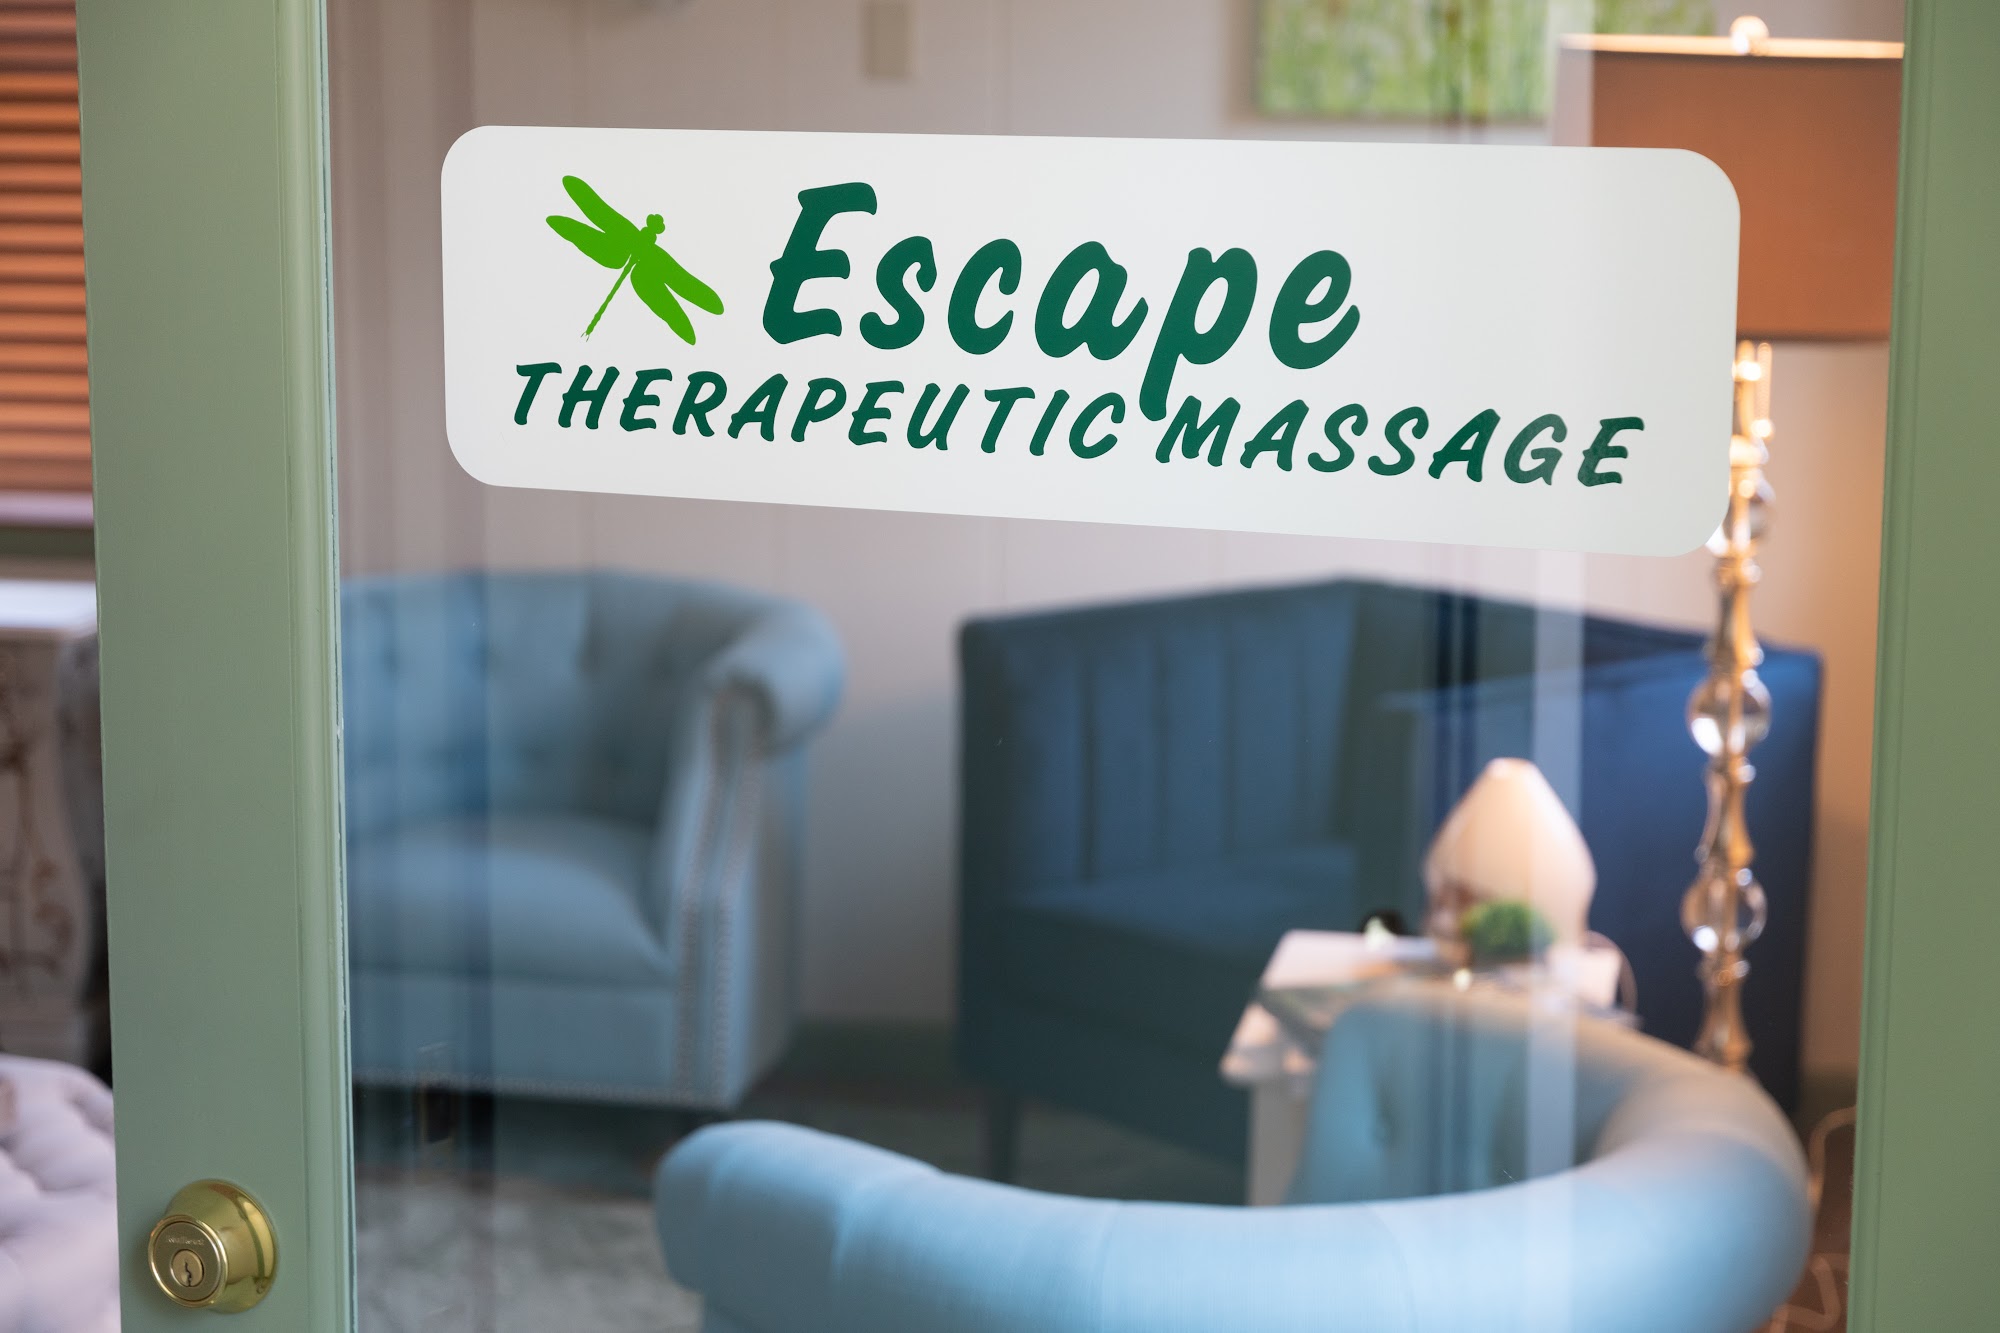 Escape Therapeutic Massage 18 Union St, Wolfeboro New Hampshire 03894